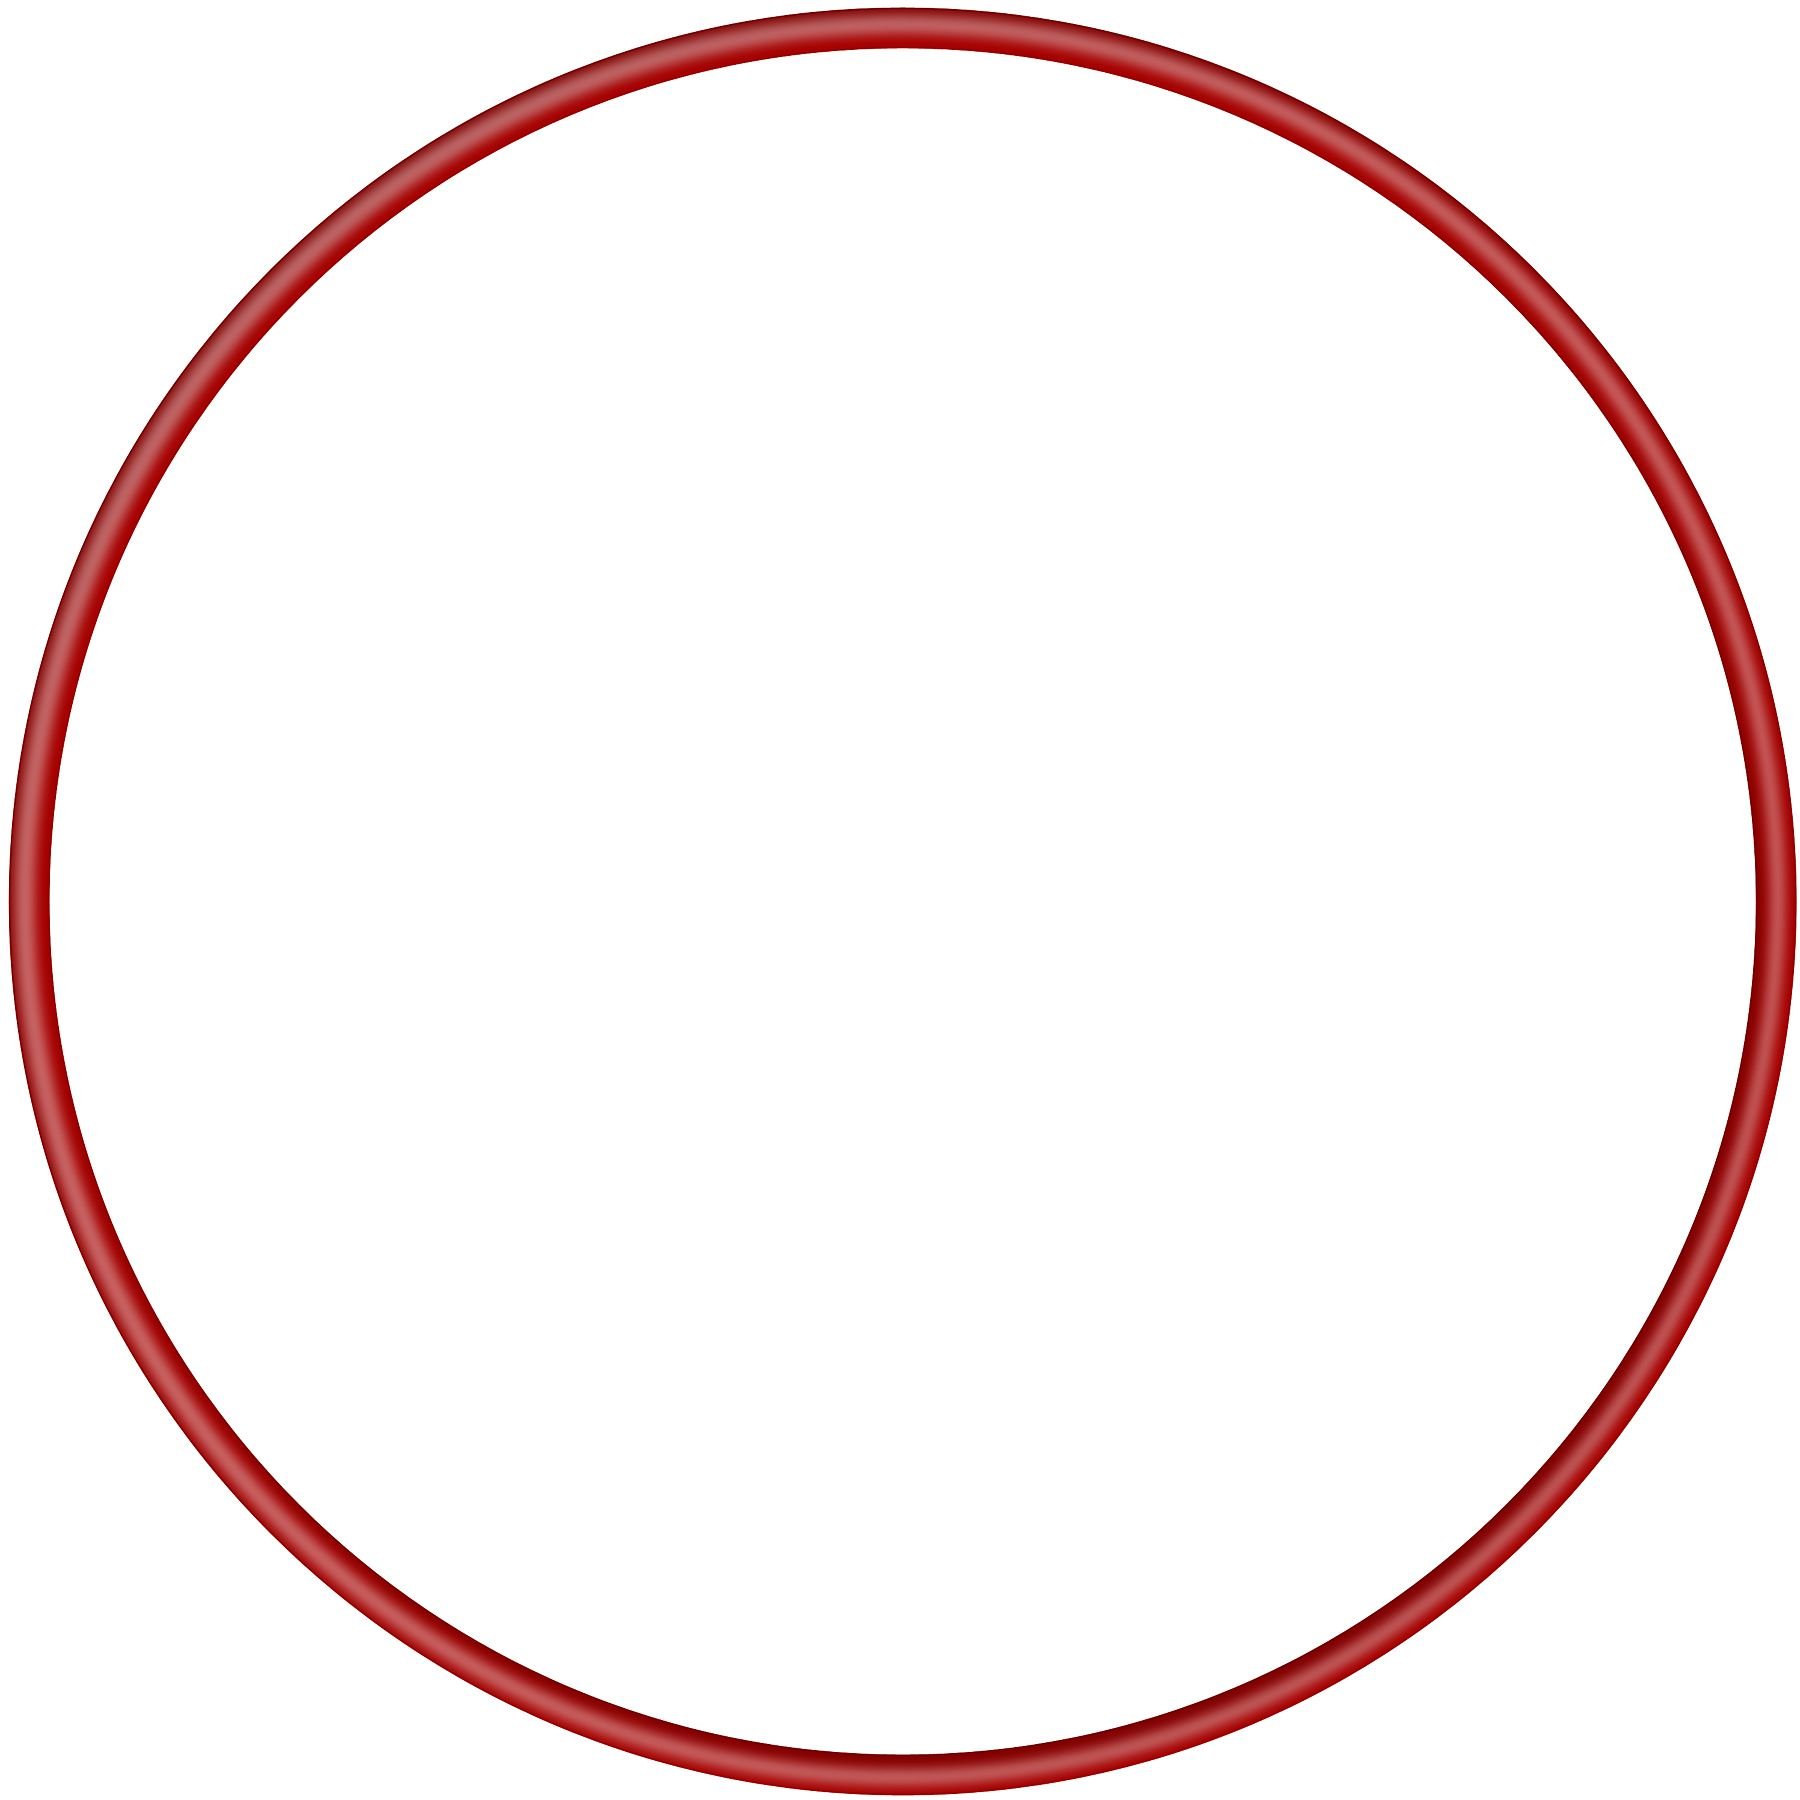 Кружочки без звука. Гимнастический обруч Пластмастер 70 см. Красный кружок на прозрачном фоне. Красный круг на прозрачном фоне. Круг с красным контуром.